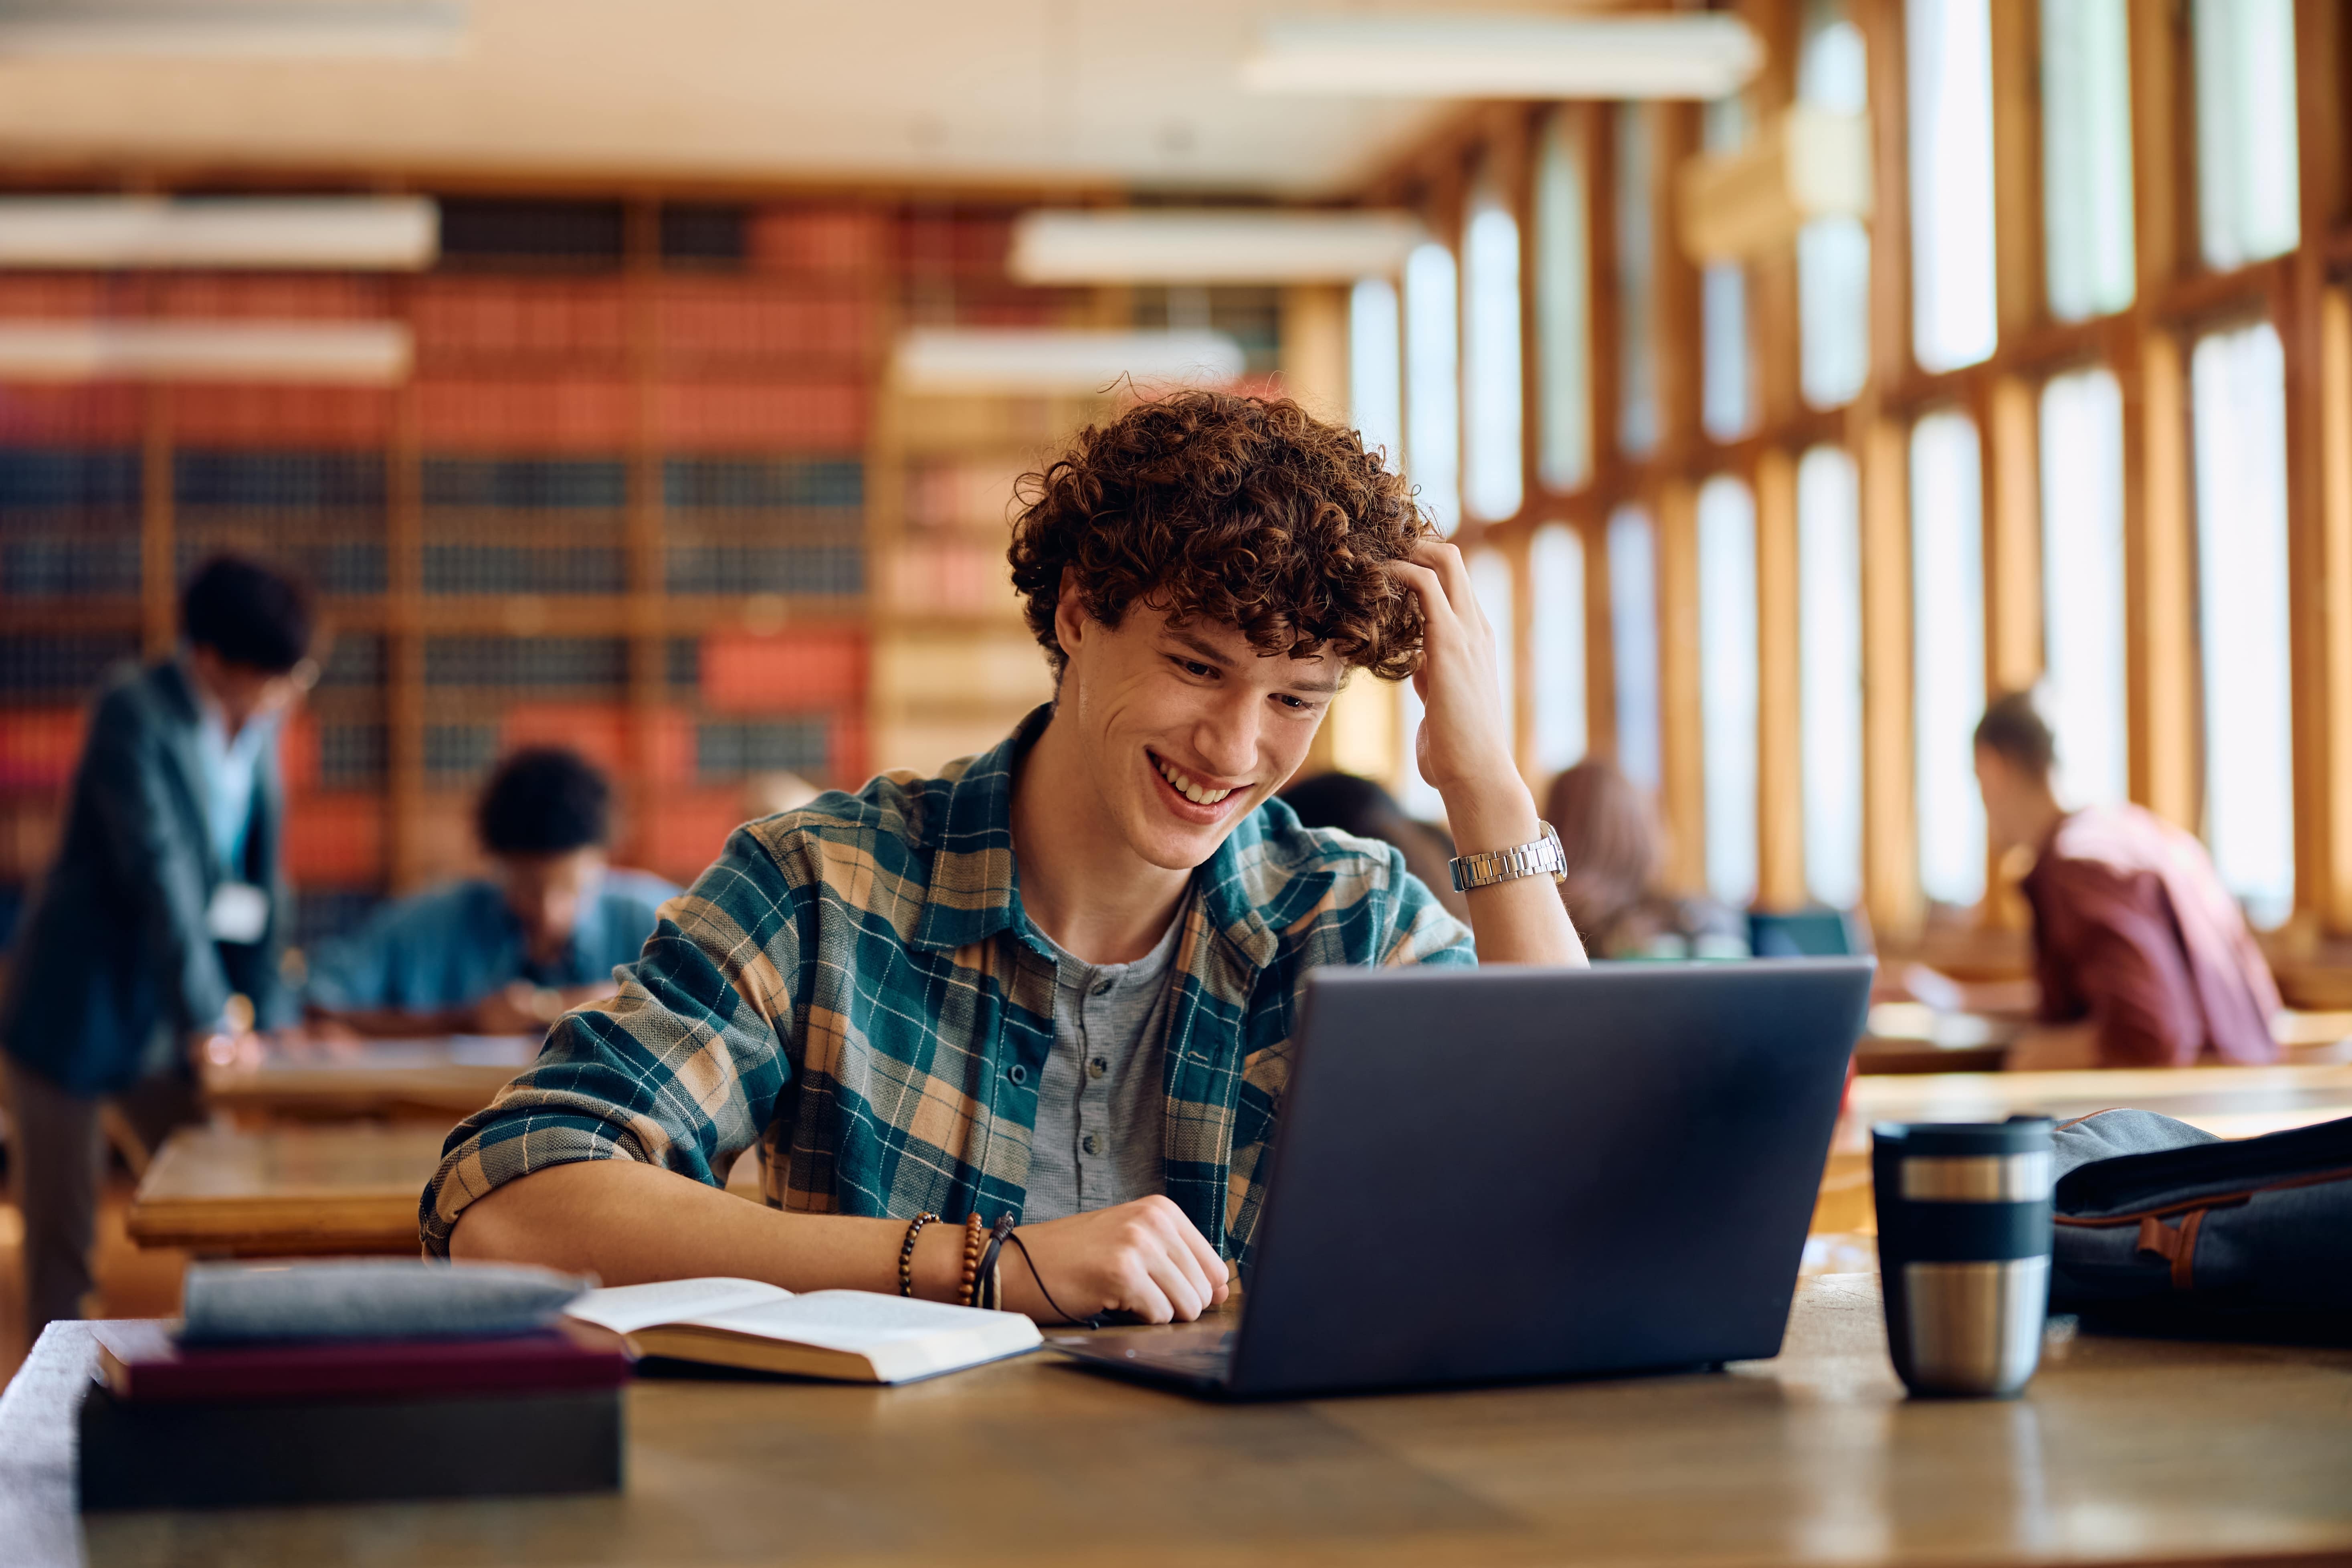 Imagem de um garoto ruivo, aprendendo inglês em seu notebook. Ele está em uma biblioteca e há outros estudantes ao fundo.